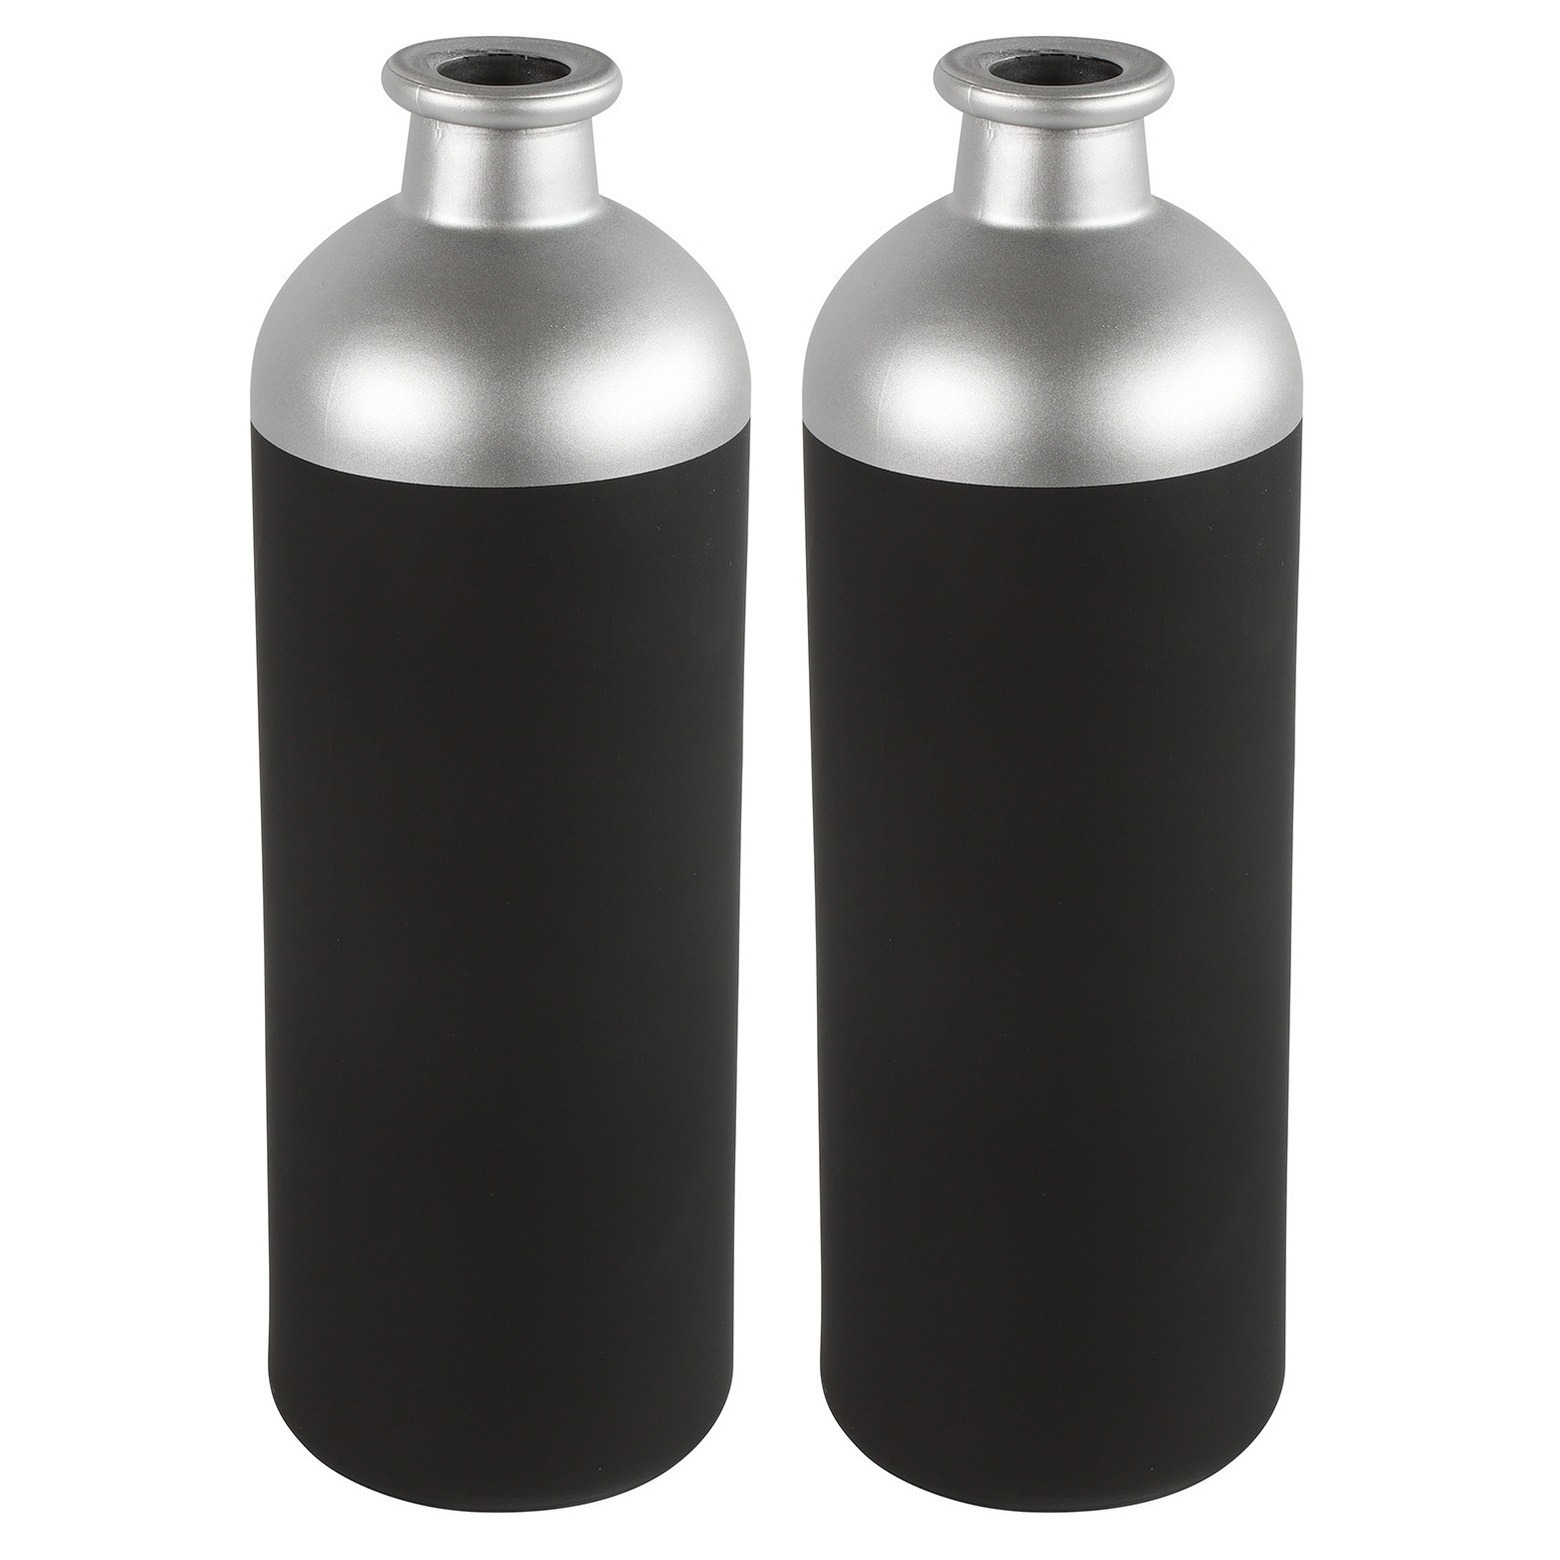 Countryfield Bloemen-deco vaas 2x zwart-zilver glas luxe fles vorm D11 x H33 cm